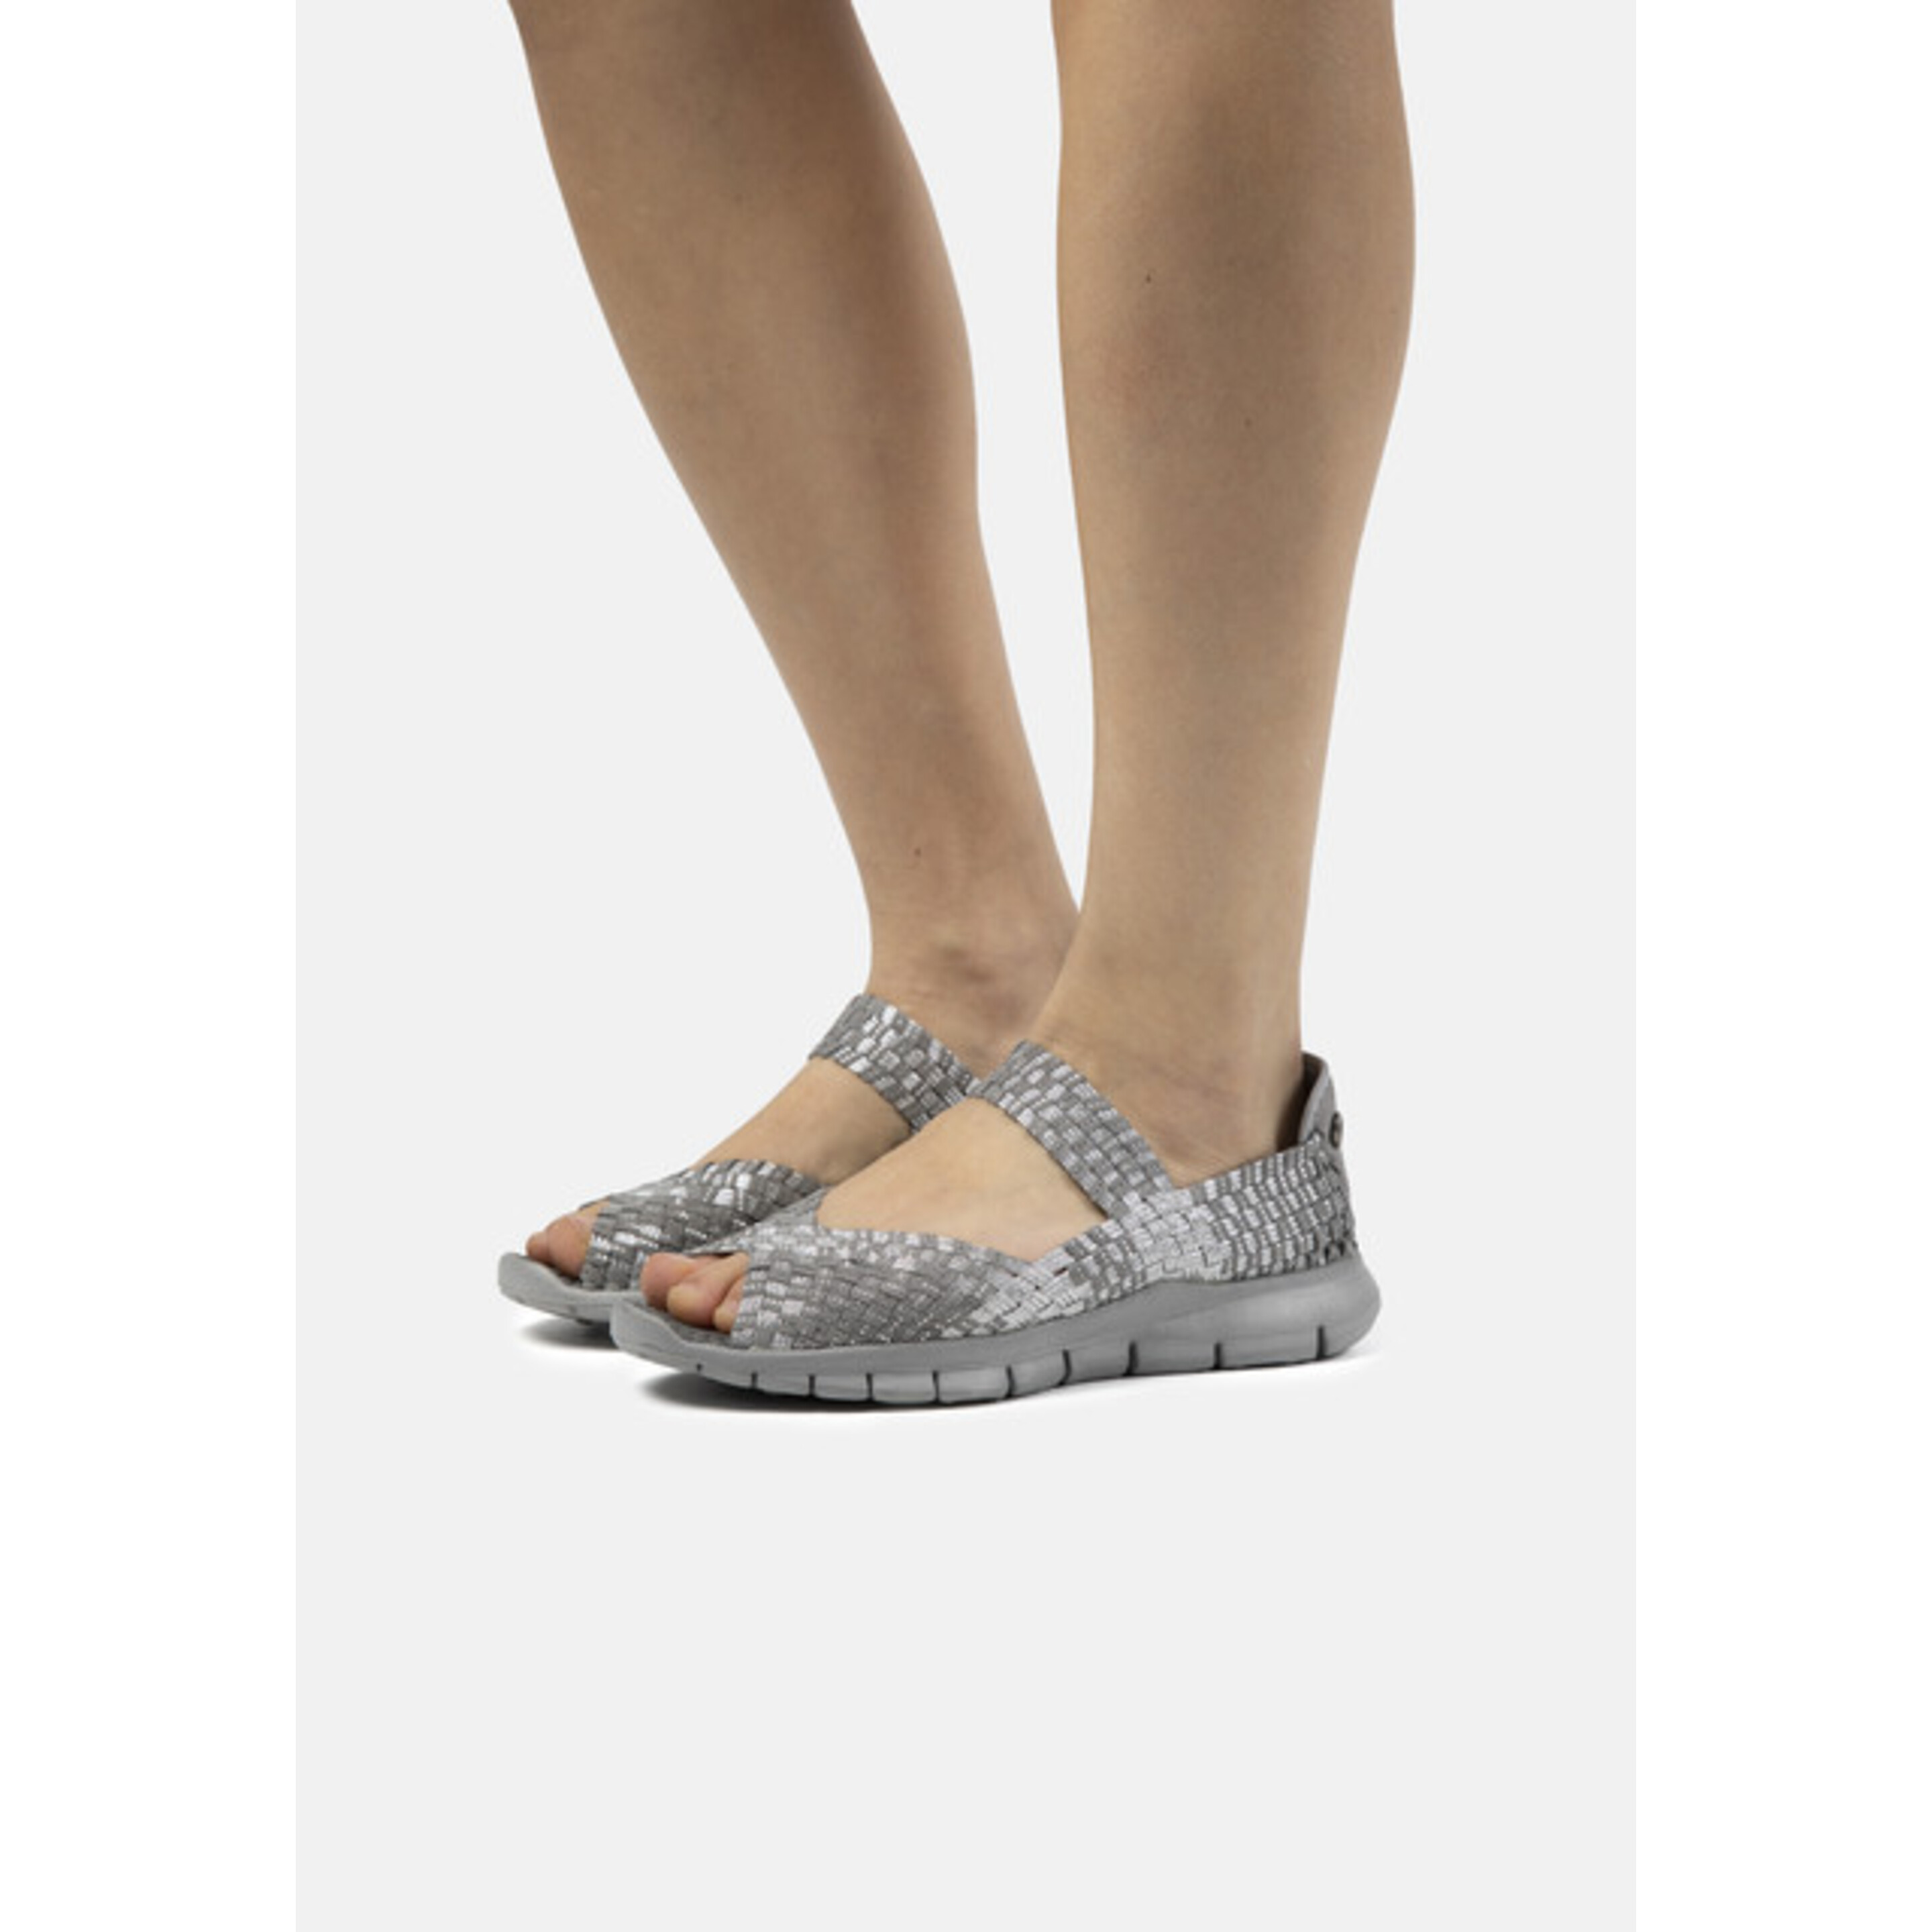 Zapatillas Deportivas De Mujer Bernie Mev De Textil En Gris Plateado (talla 35 A 42)